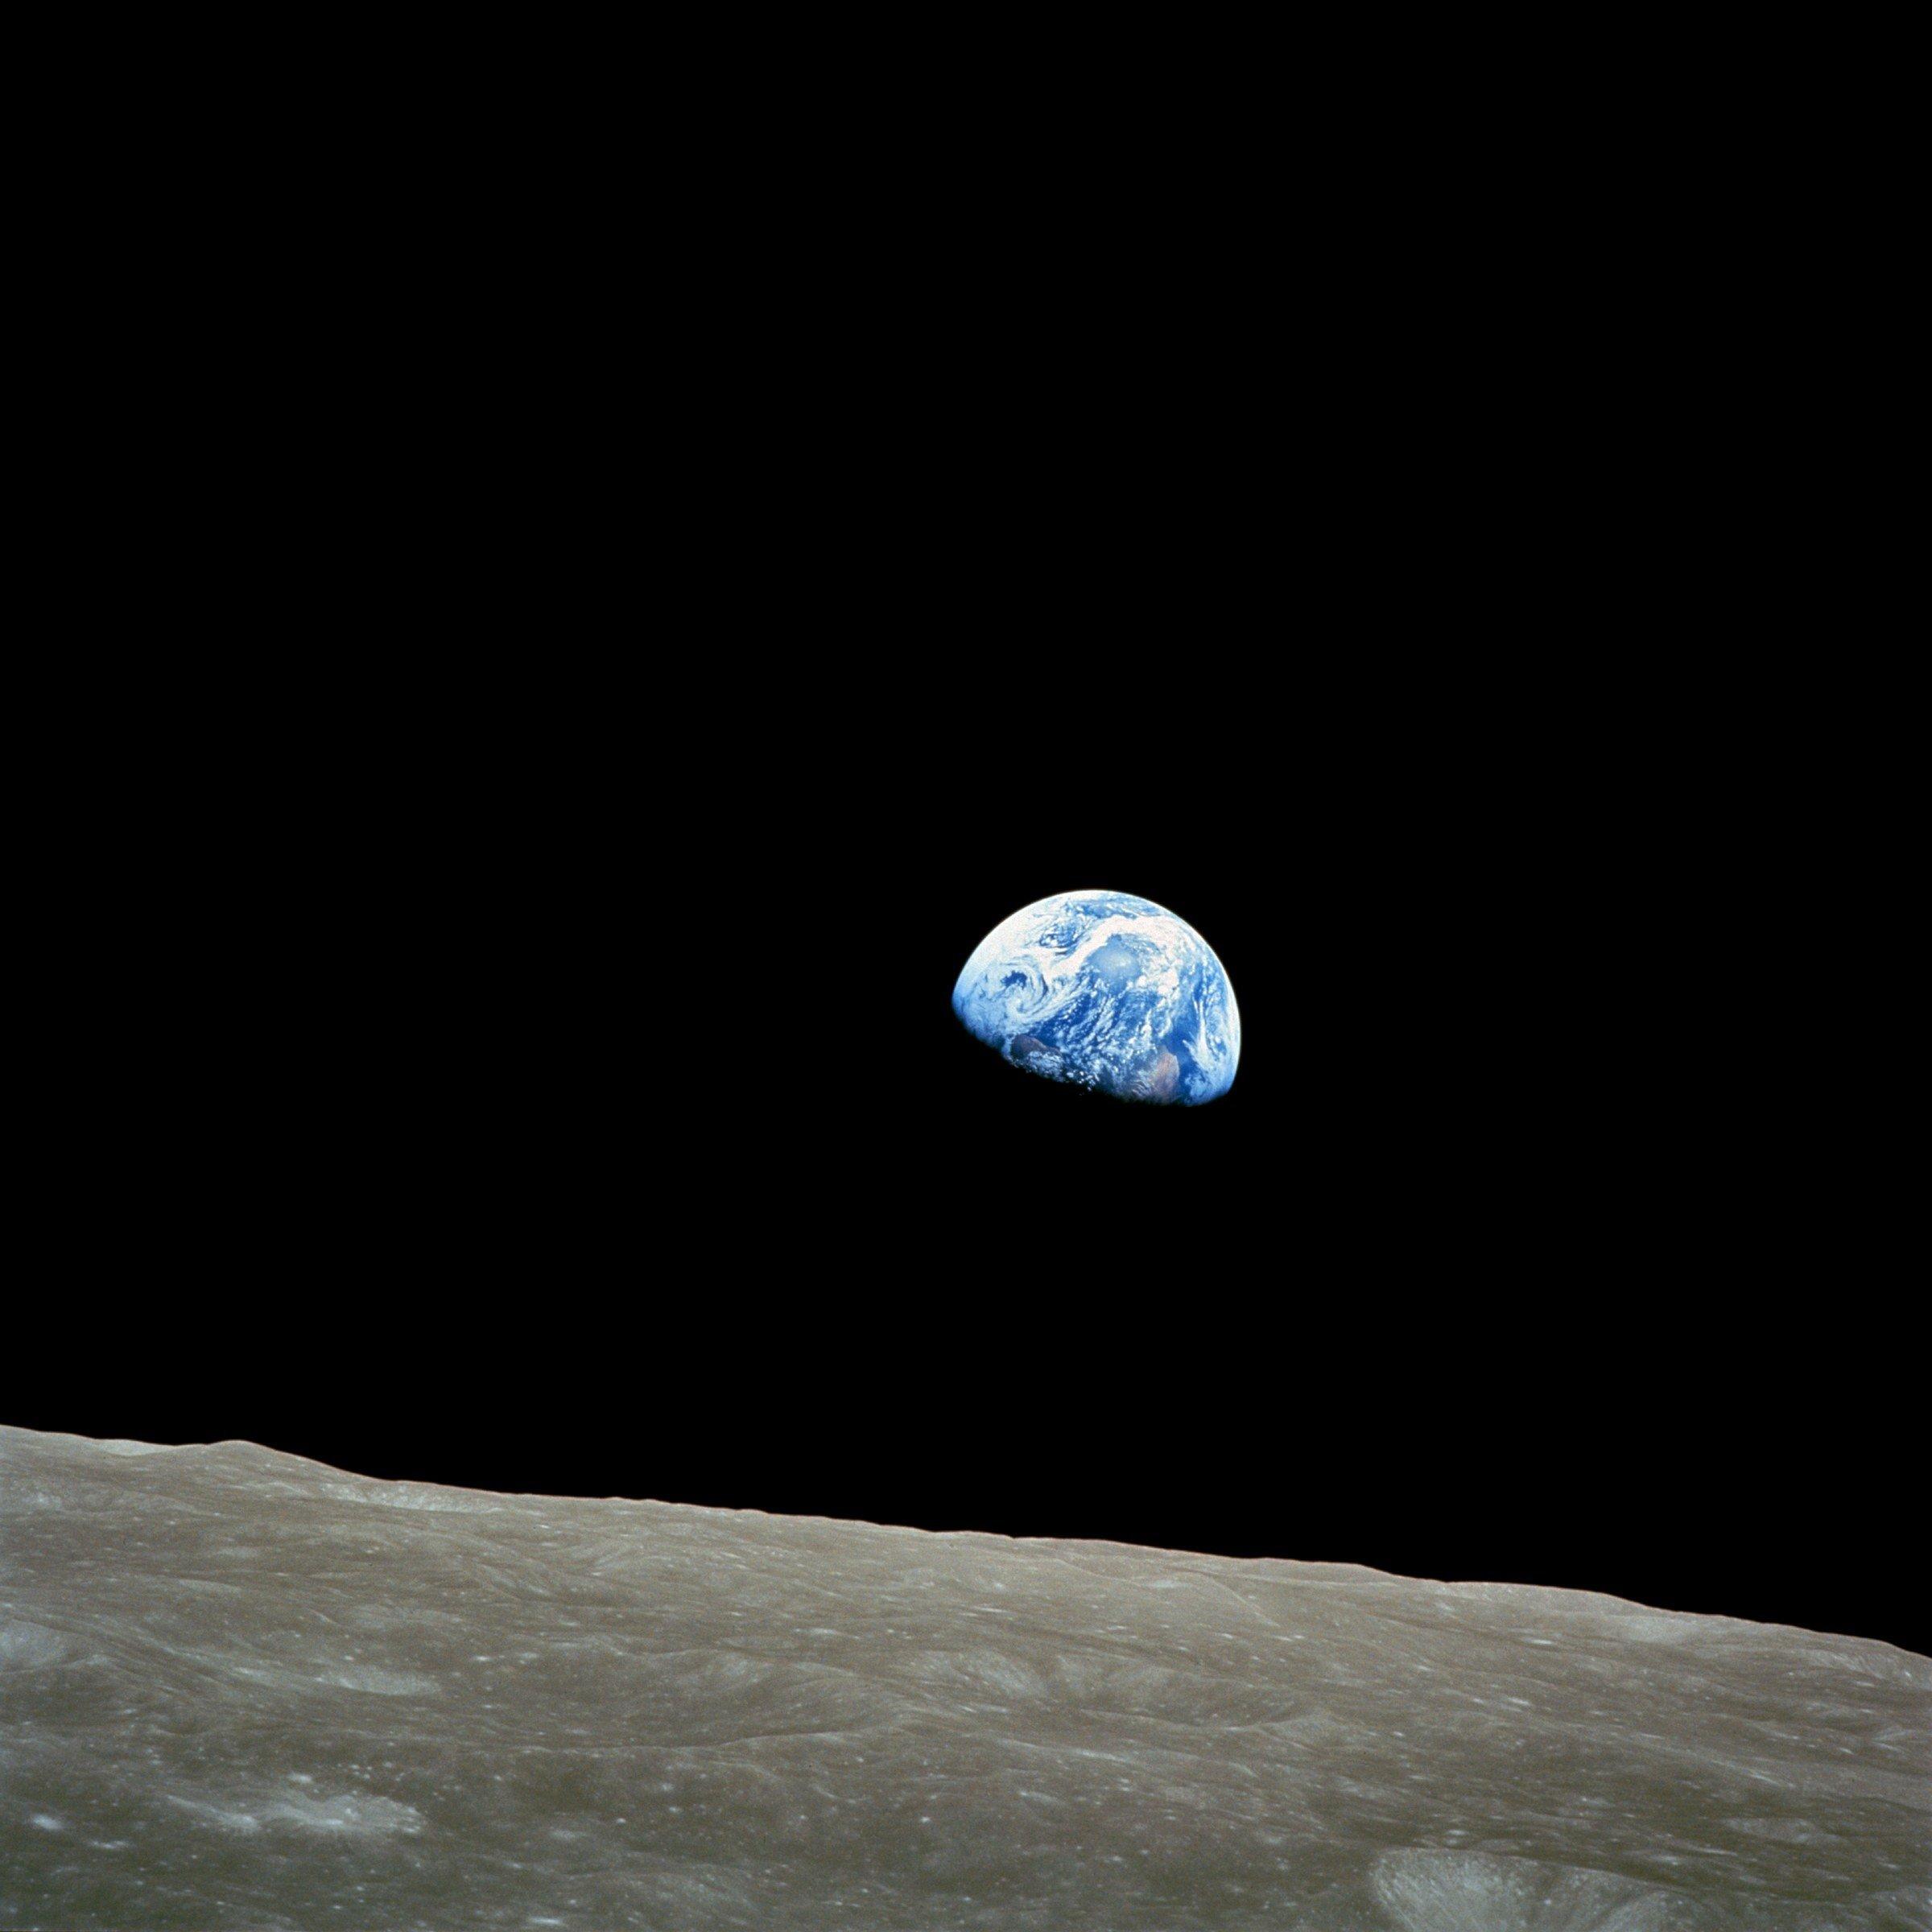 Dieses Bild ist entstanden, als das Raumschiff Apollo 8 nach der ersten Umrundung des Mondes wieder Sichtkontakt mit der Erde bekam. –
„Earthrise“ heißt diese berühmte Aufnahme von der Apollo-8-Mission aus dem Jahr 1968. Al Gore beginnt seinen Vortrag traditionell damit. Das Foto sei der Startschuss für die Umweltbewegung gewesen, sagt er.